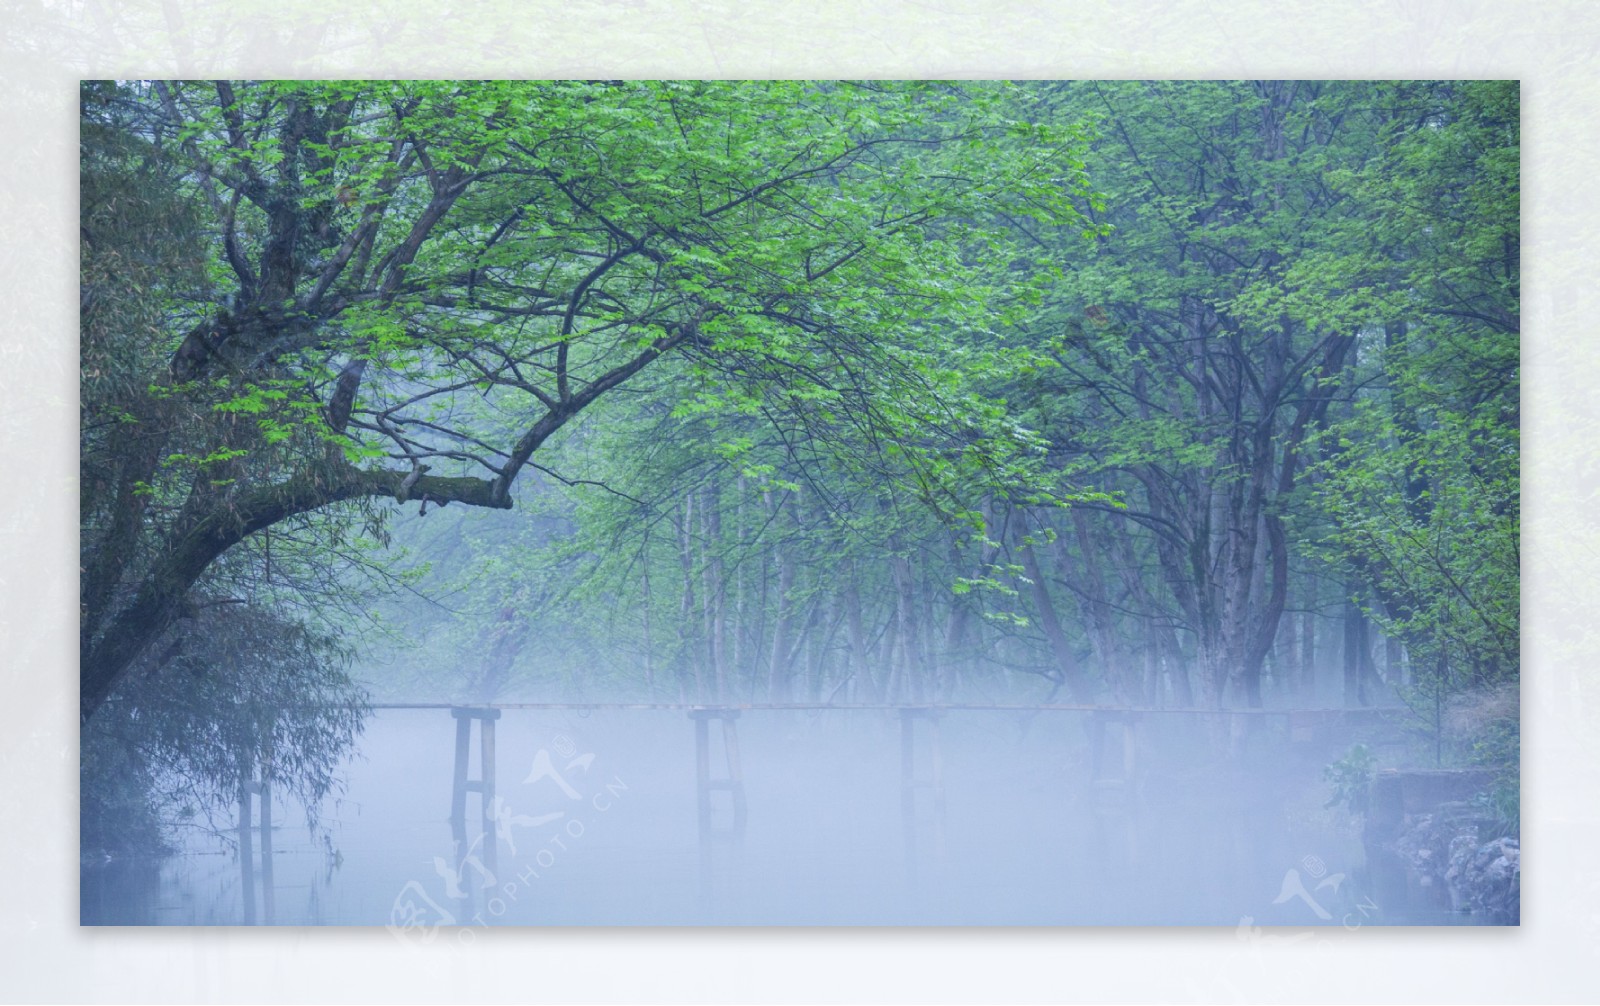 清晨雾气森林图片